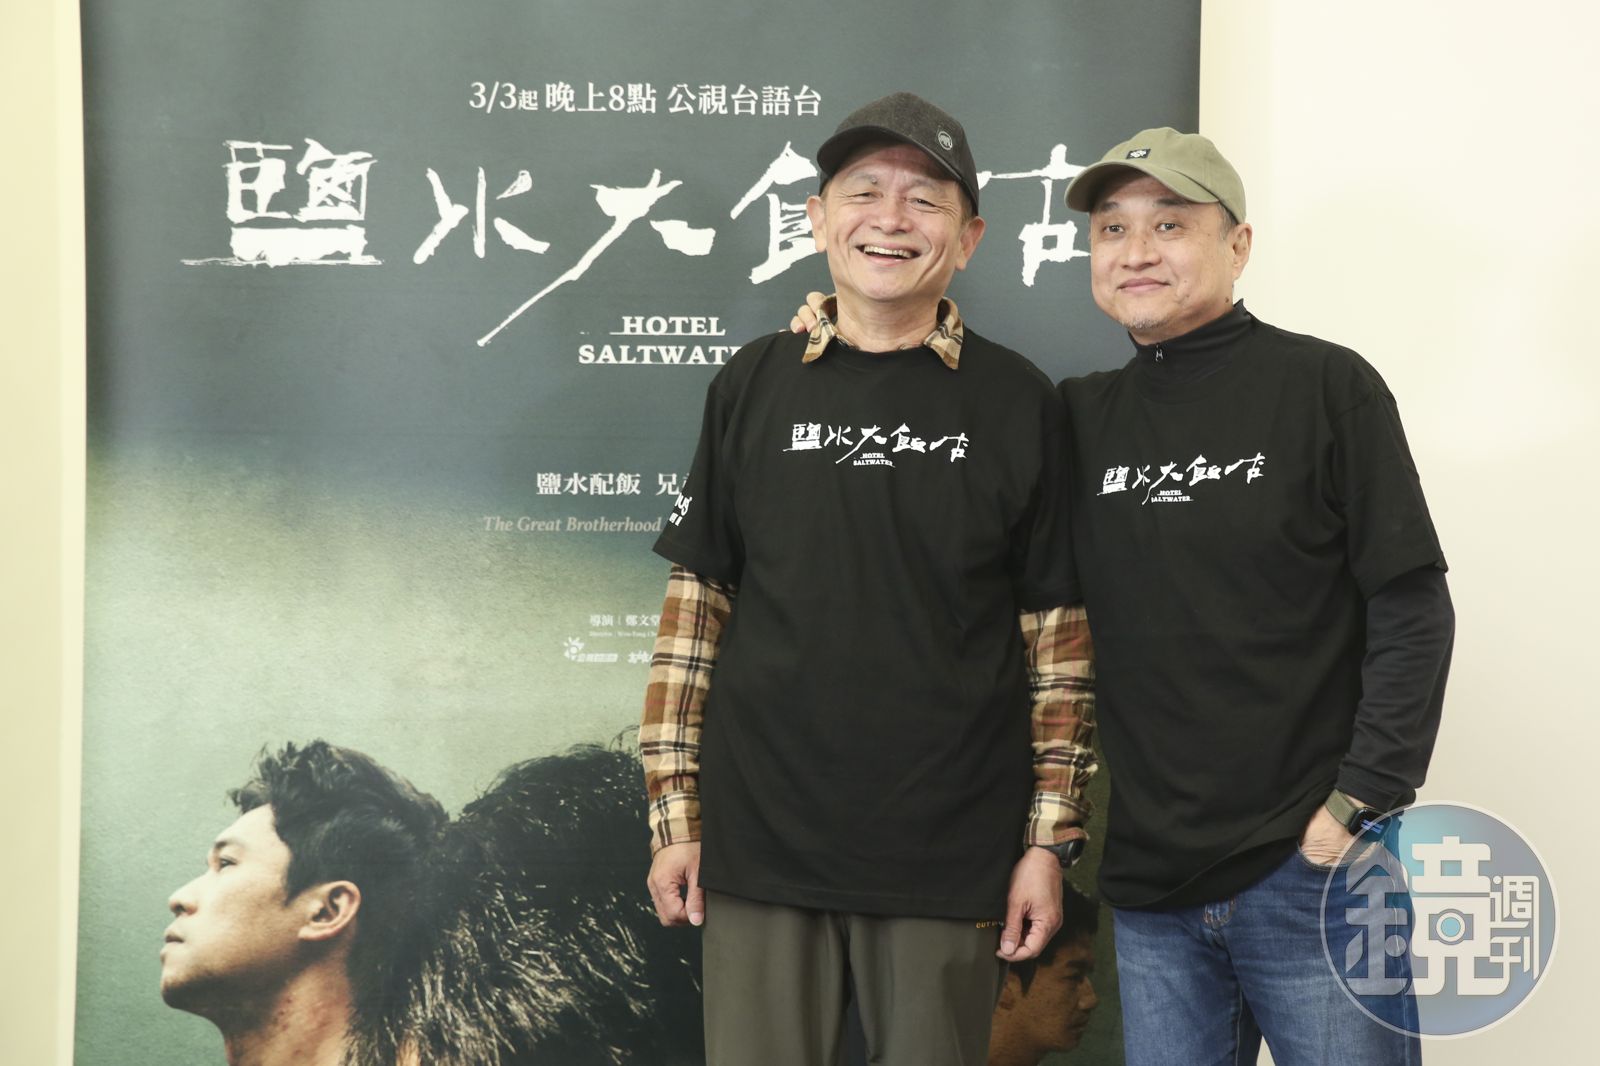 鄭文堂、林志儒導演共同執導的時代劇集《鹽水大飯店》。